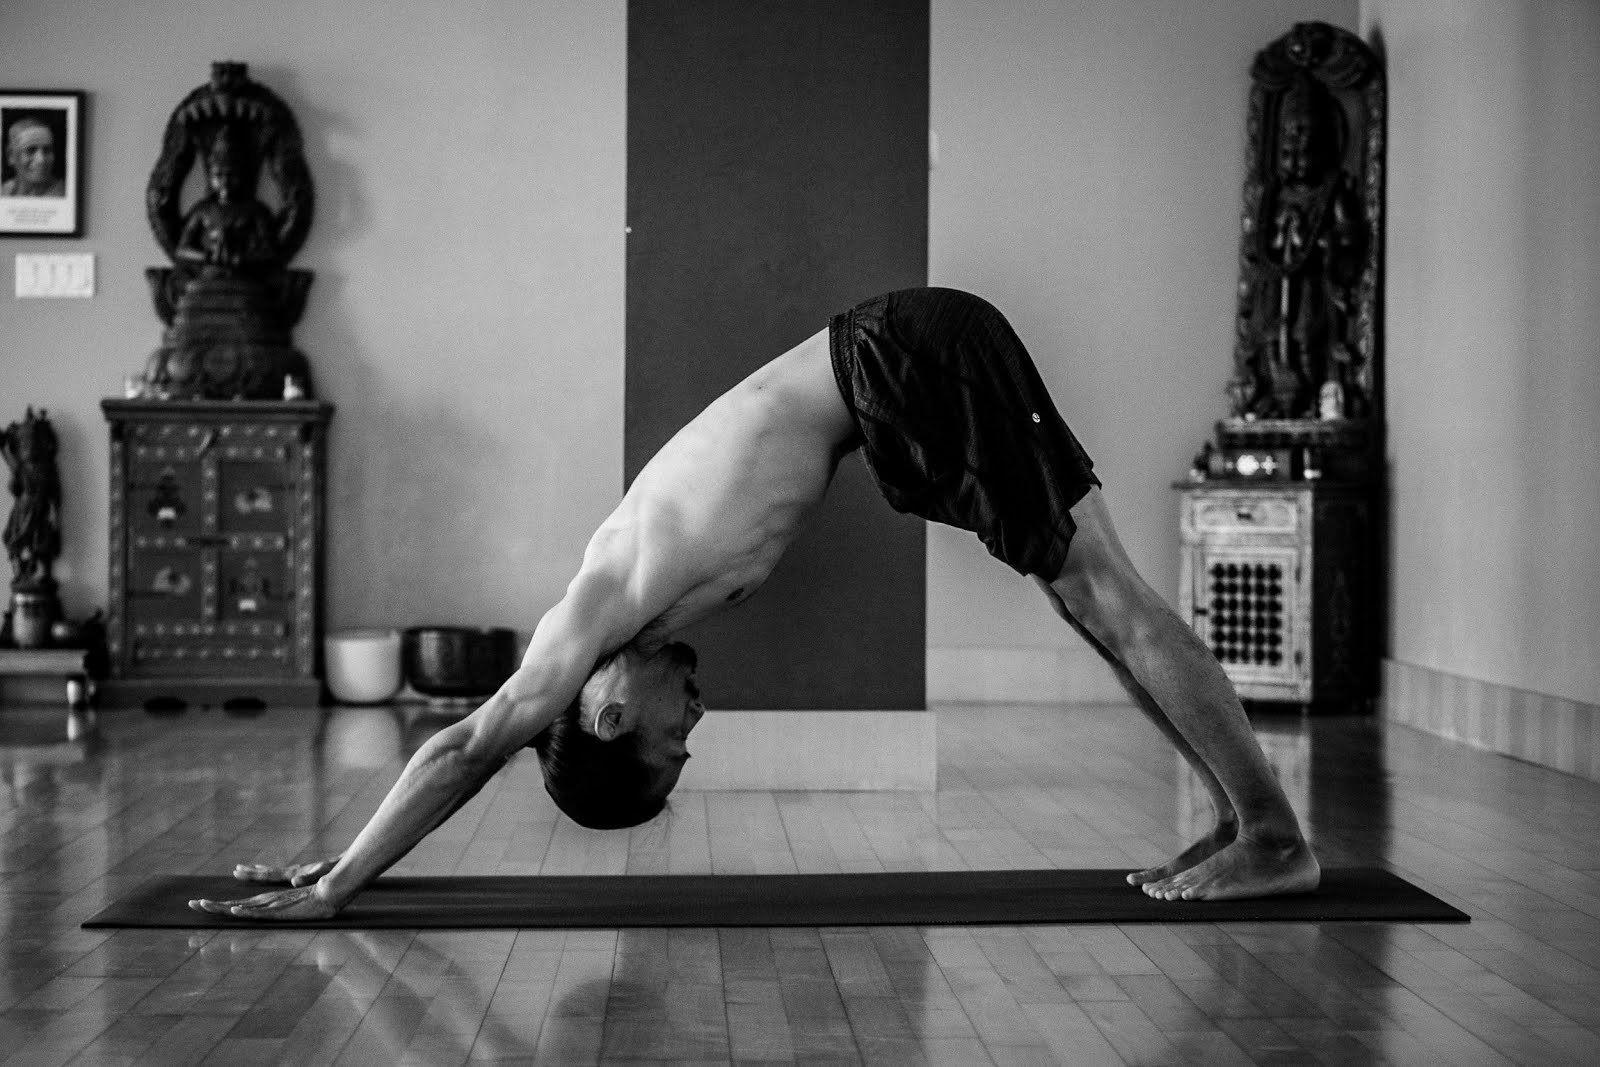 Atsuro Yoga: GALLERY